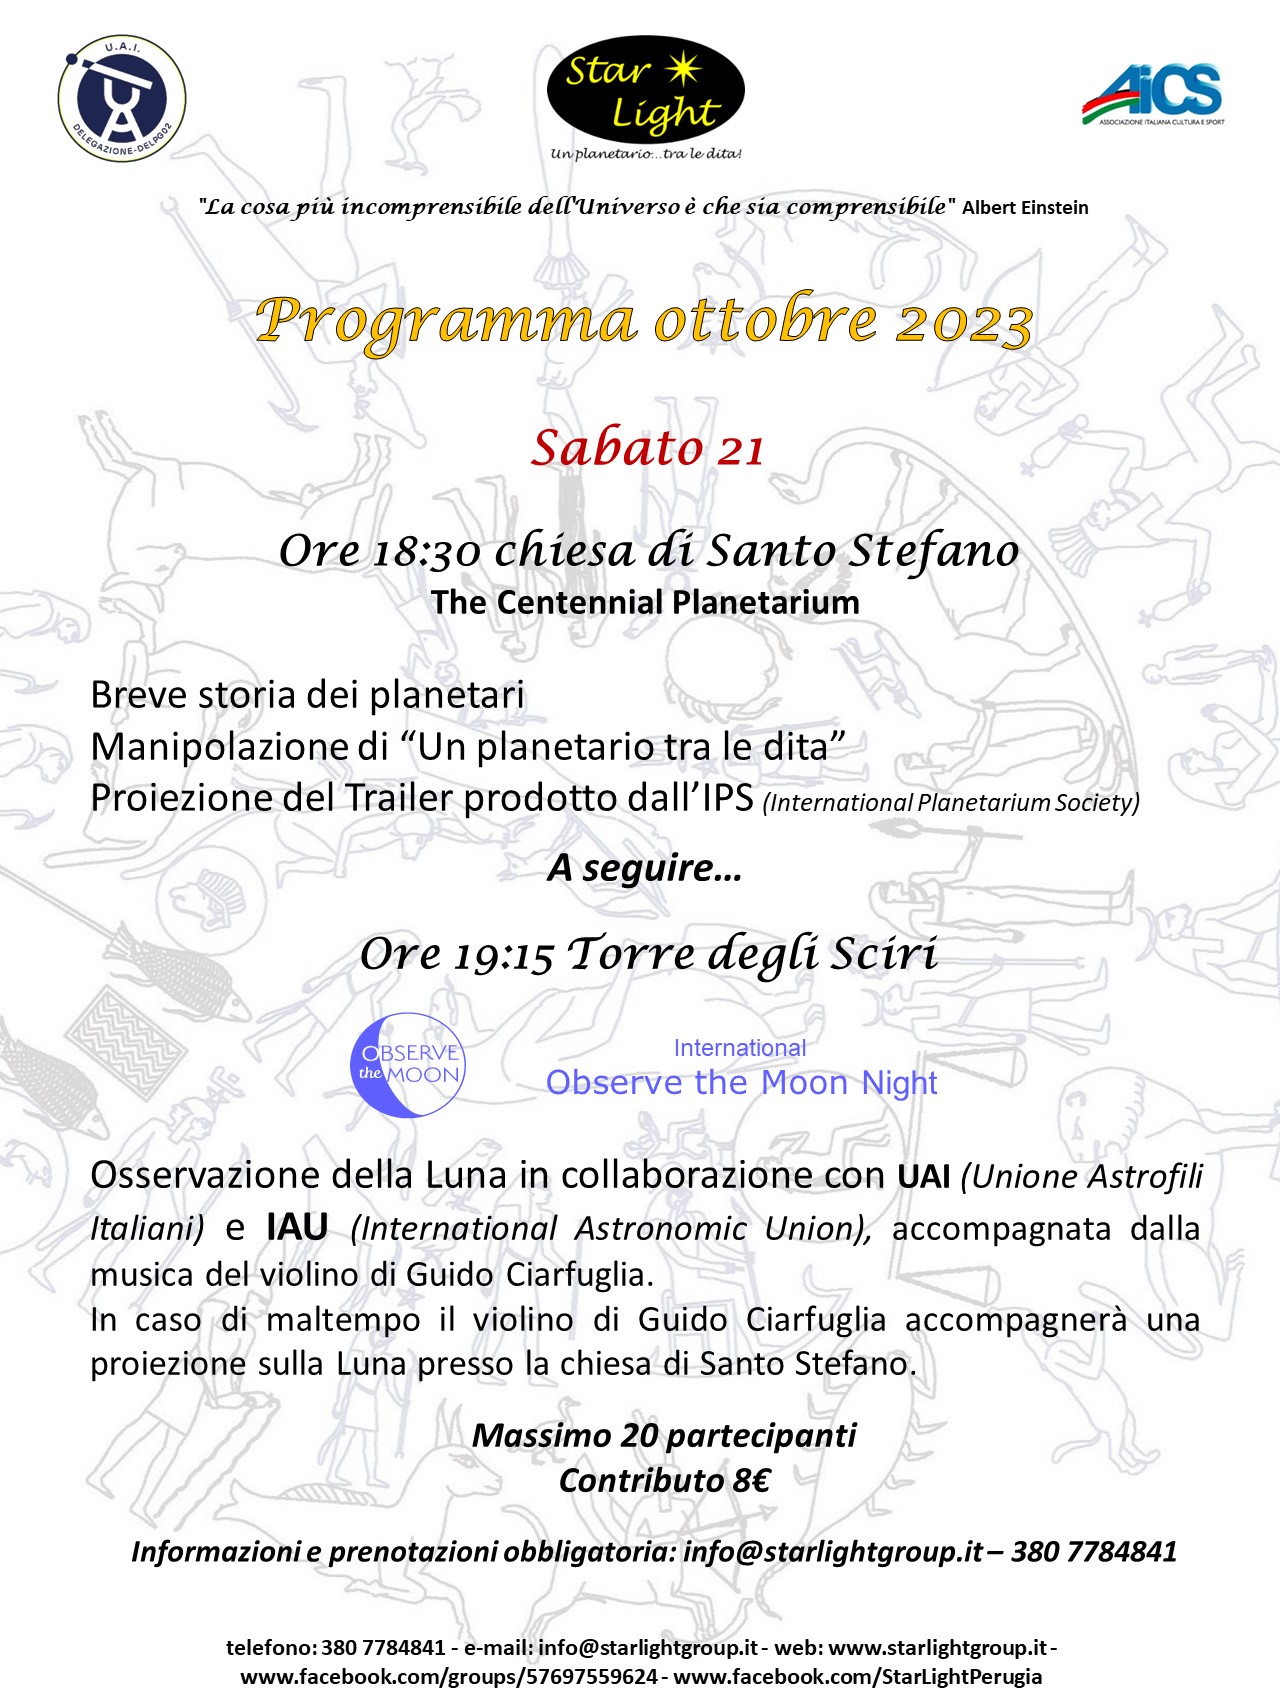 Sabato 21 ottobre, dalle ore 18,30 a Perugia incontro pubblico sull’astronomia con l’osservazione della Luna.